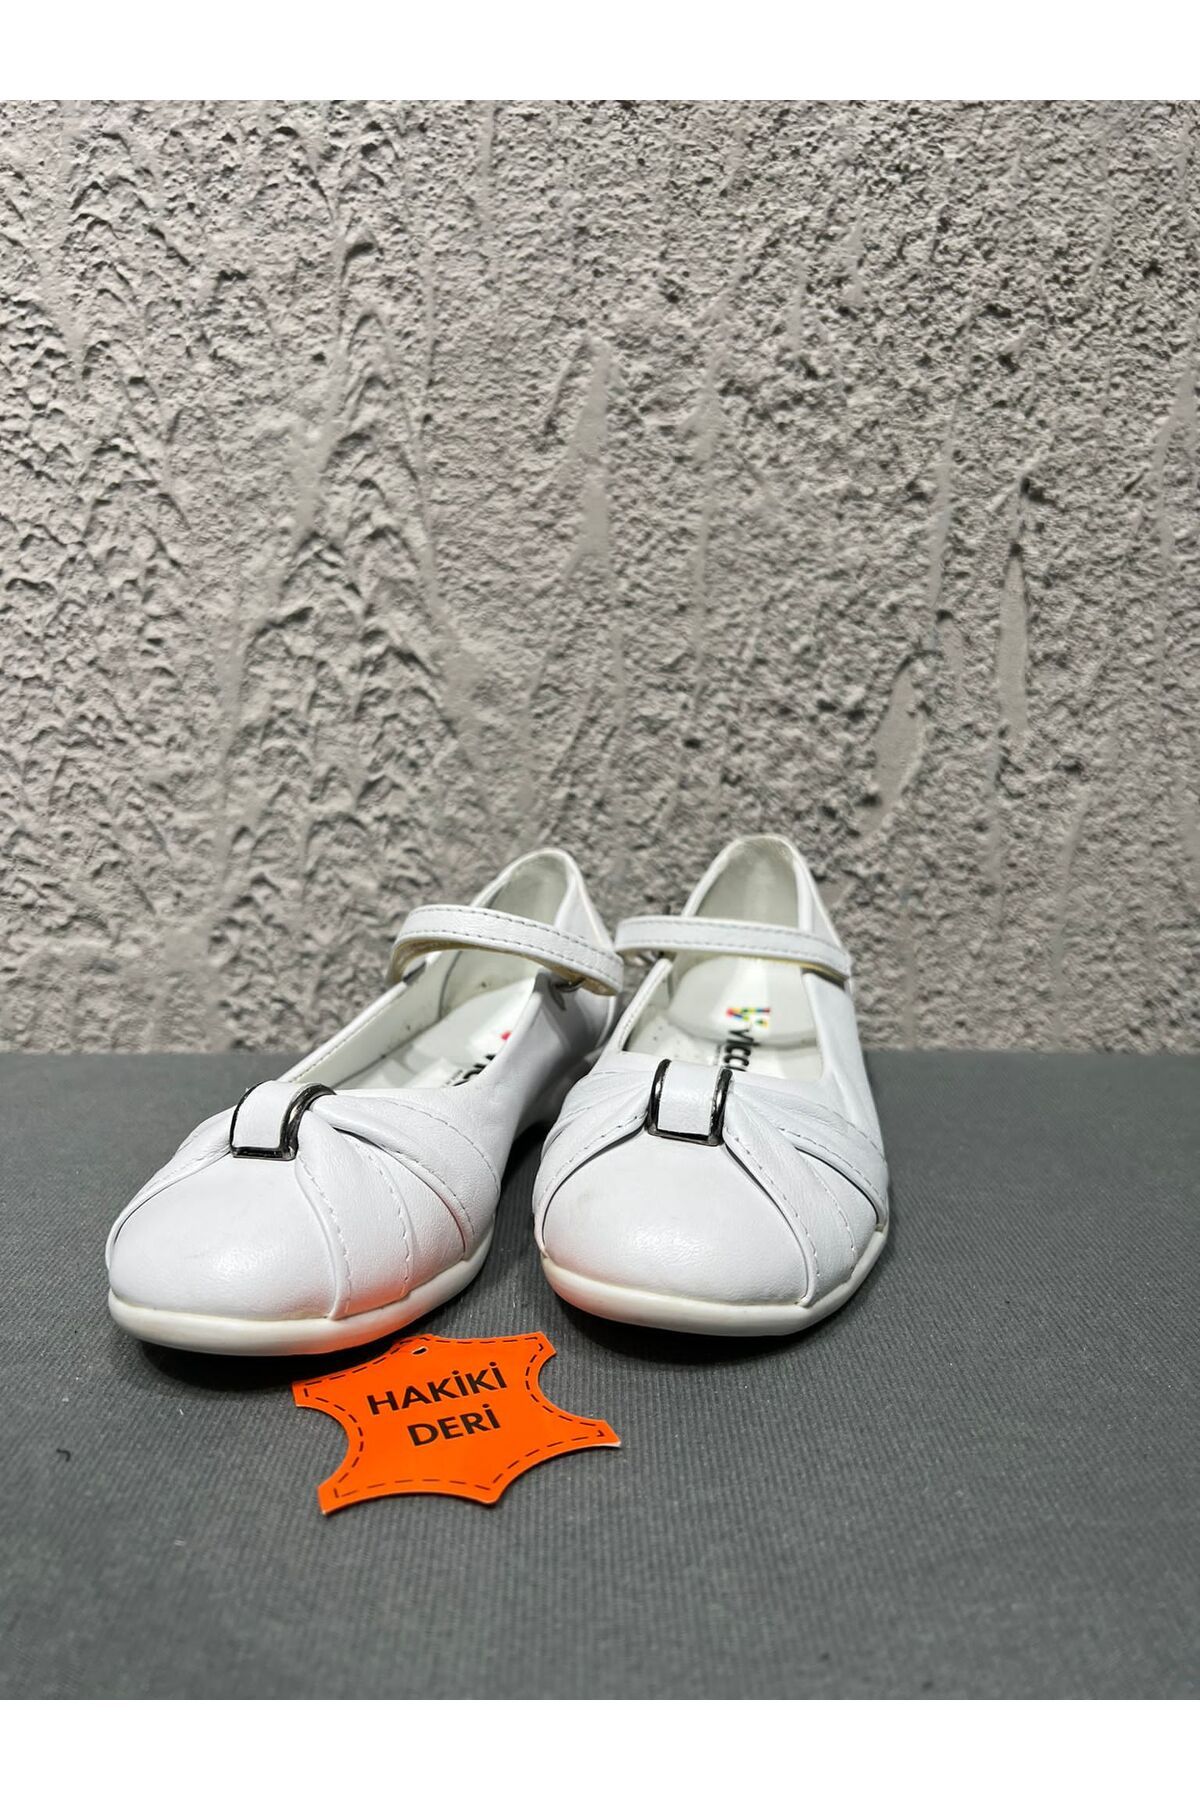 Vicco Hakiki Deri Beyaz Kız Babet Ayakkabı